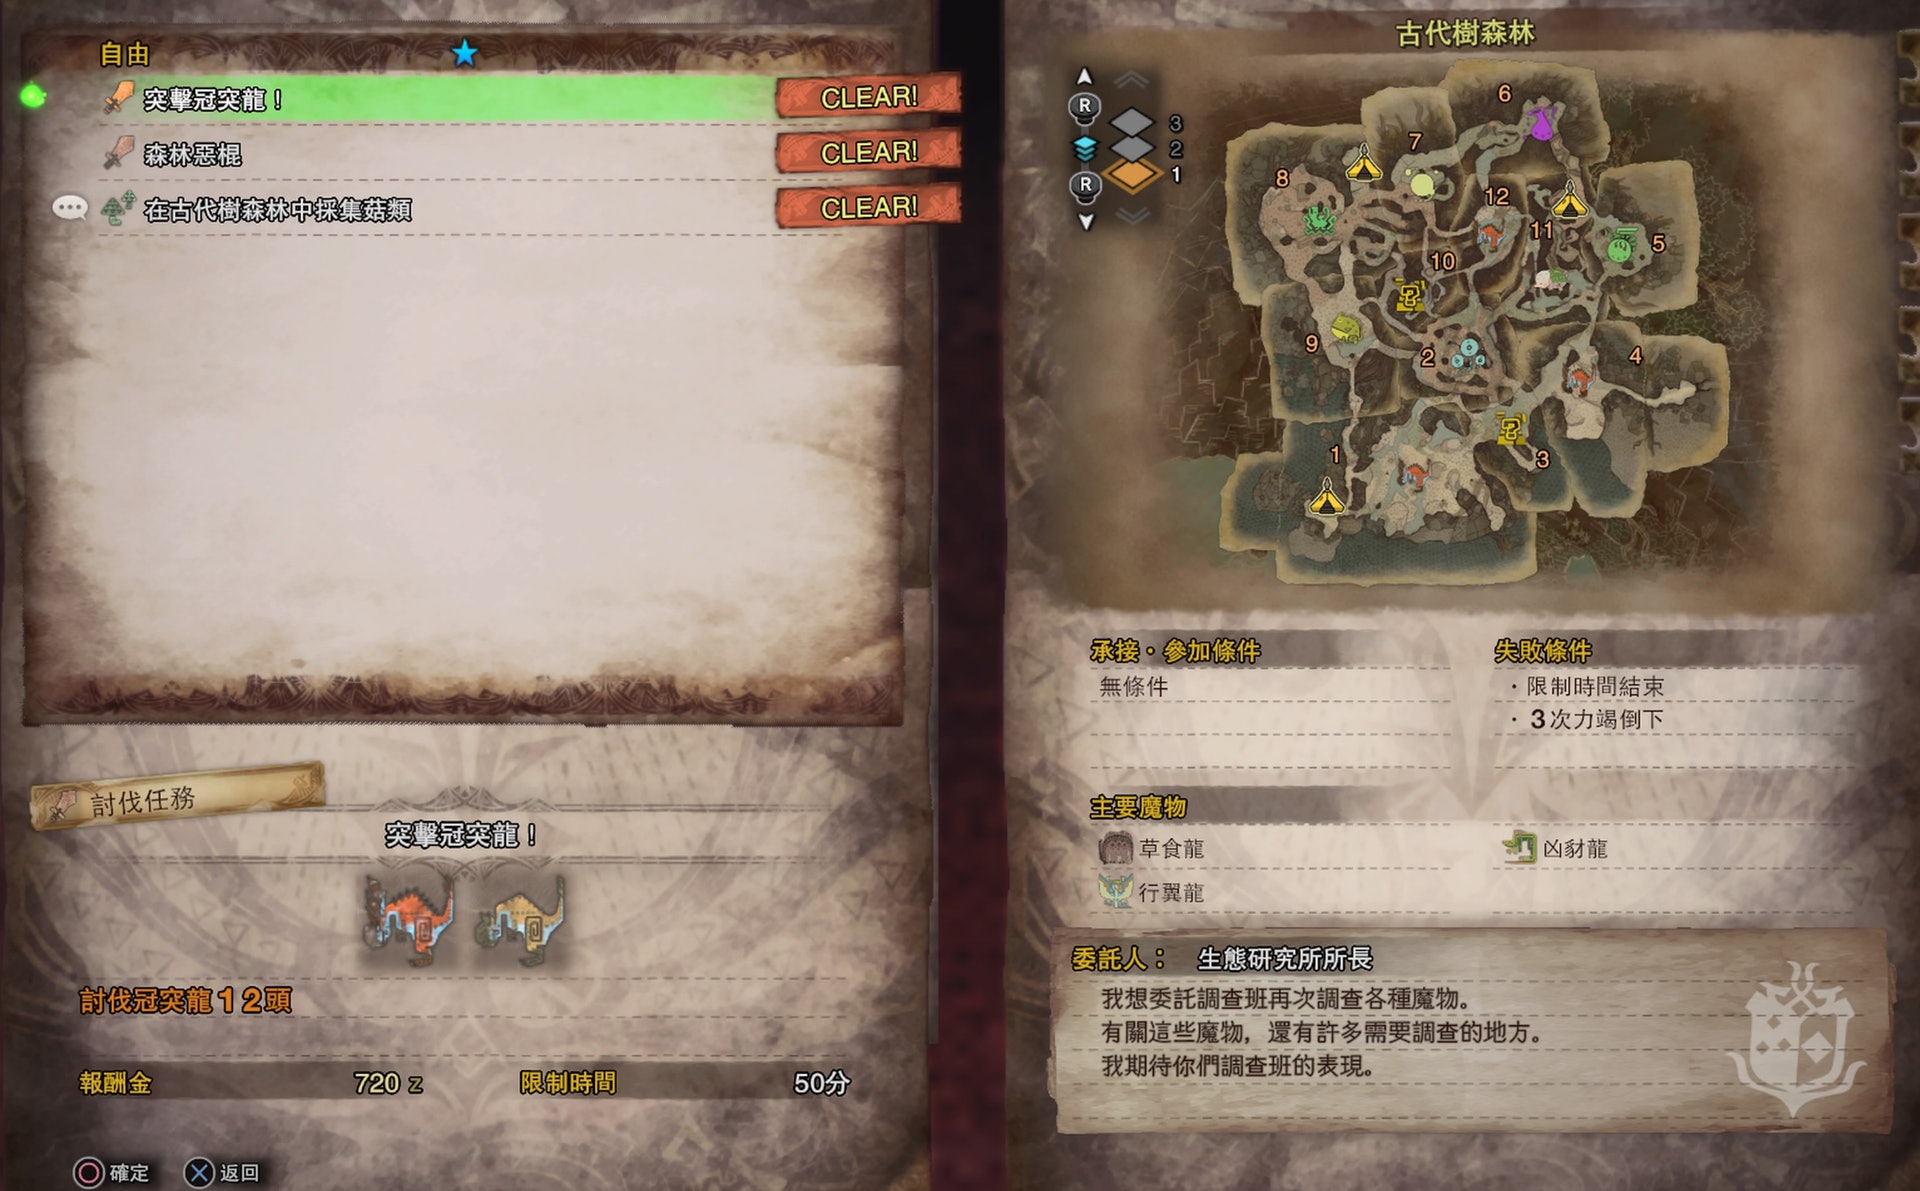 Monster Hunter World攻略 全自由任務中文列表及出現條件 香港01 遊戲動漫